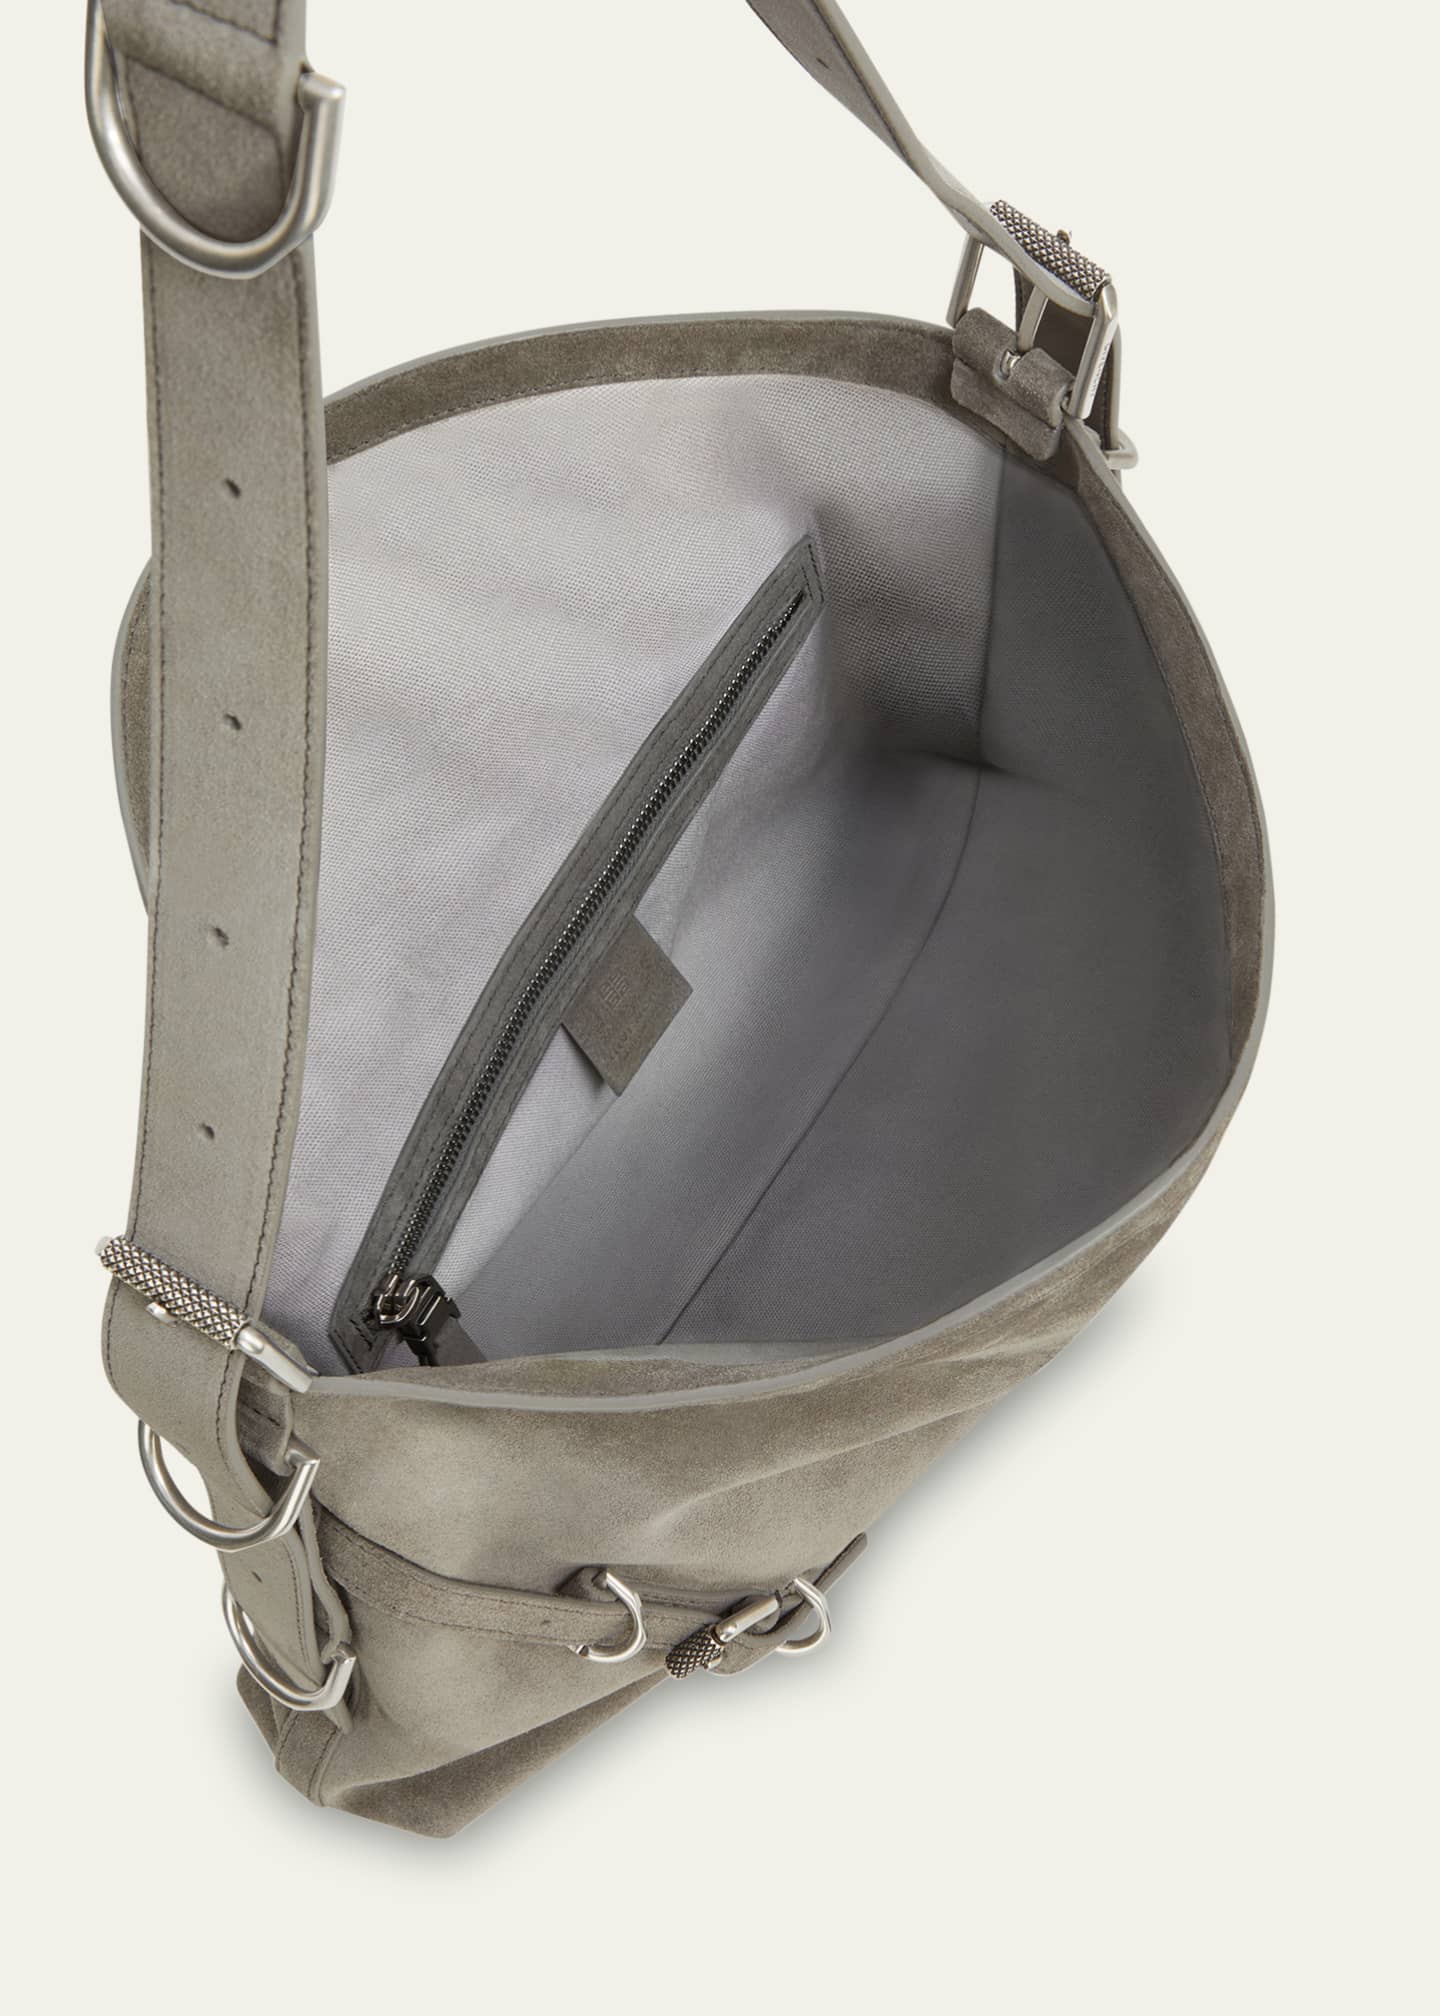 Givenchy Medium Sway Leather Shoulder Bag - Shoulder Bags, Handbags